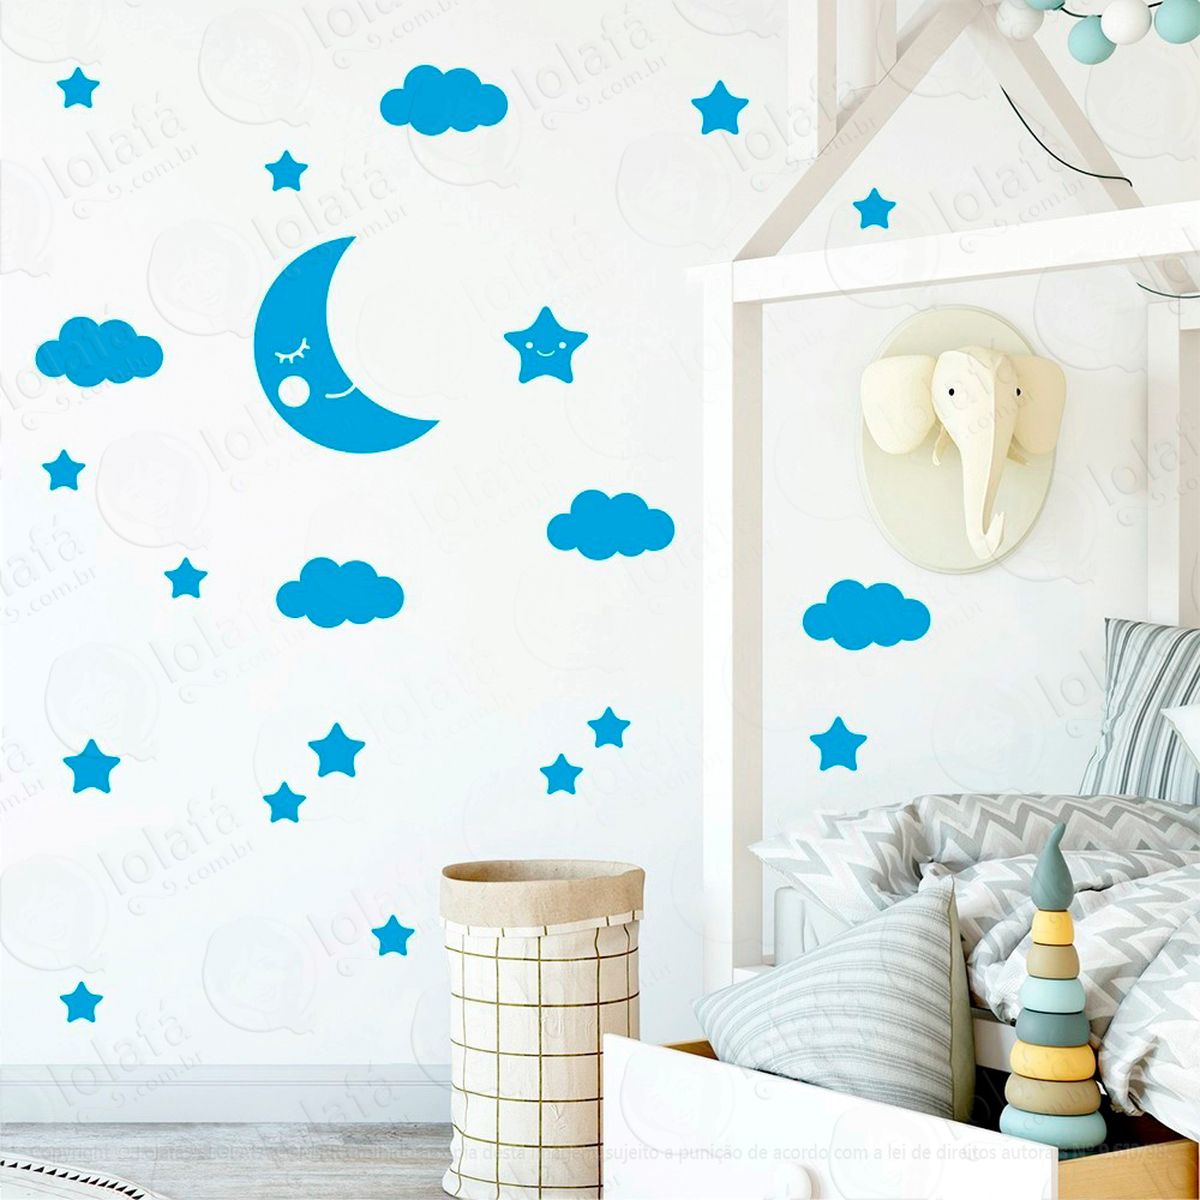 adesivos lua nuvens e estrelas 62 peças adesivos para quarto de bebê infantil - mod:629